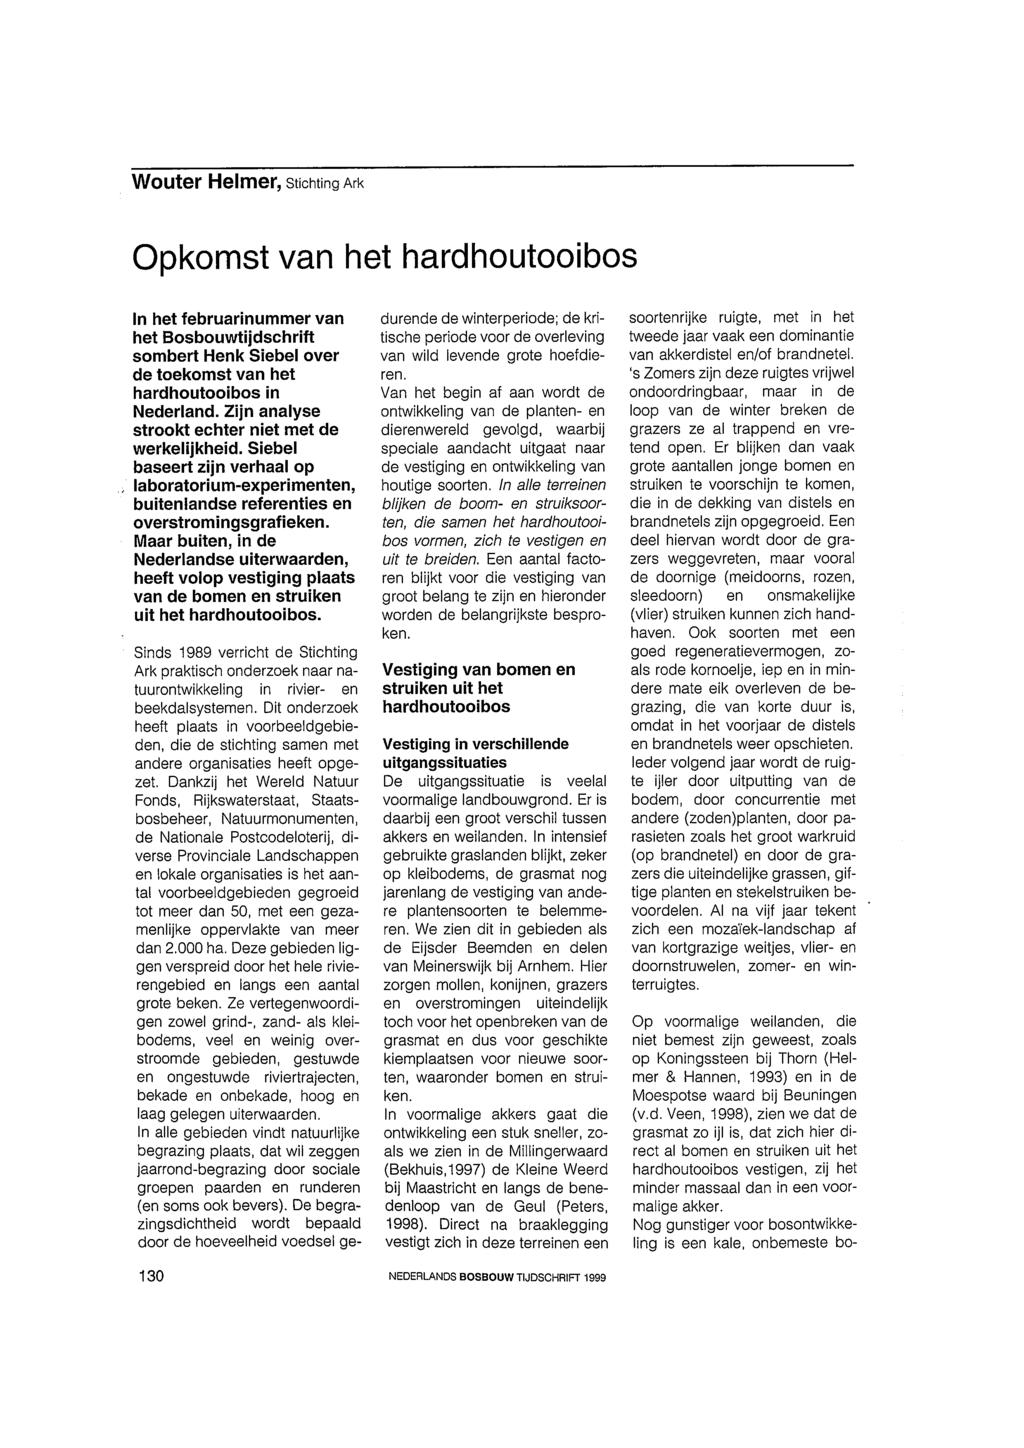 Wouter Helmer, Stichting Ark Opkomst van het hard houtooi bos In het februarinummer van het Bosbouwtijdschrift sombert Henk Siebel over de toekomst van het hardhoutooibos in Nederland.